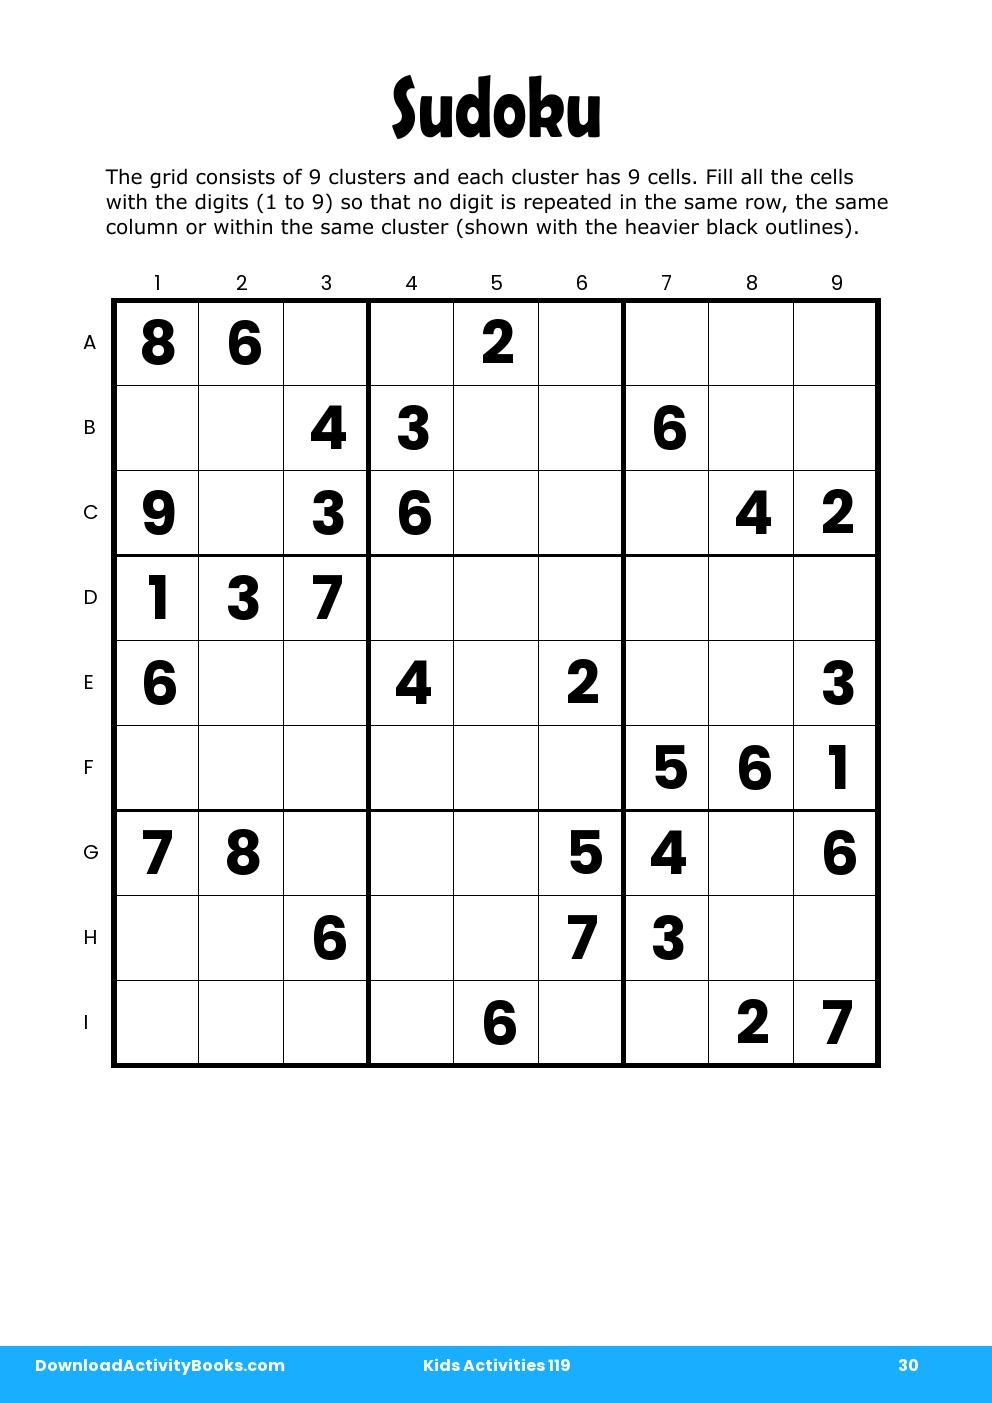 Sudoku in Kids Activities 119